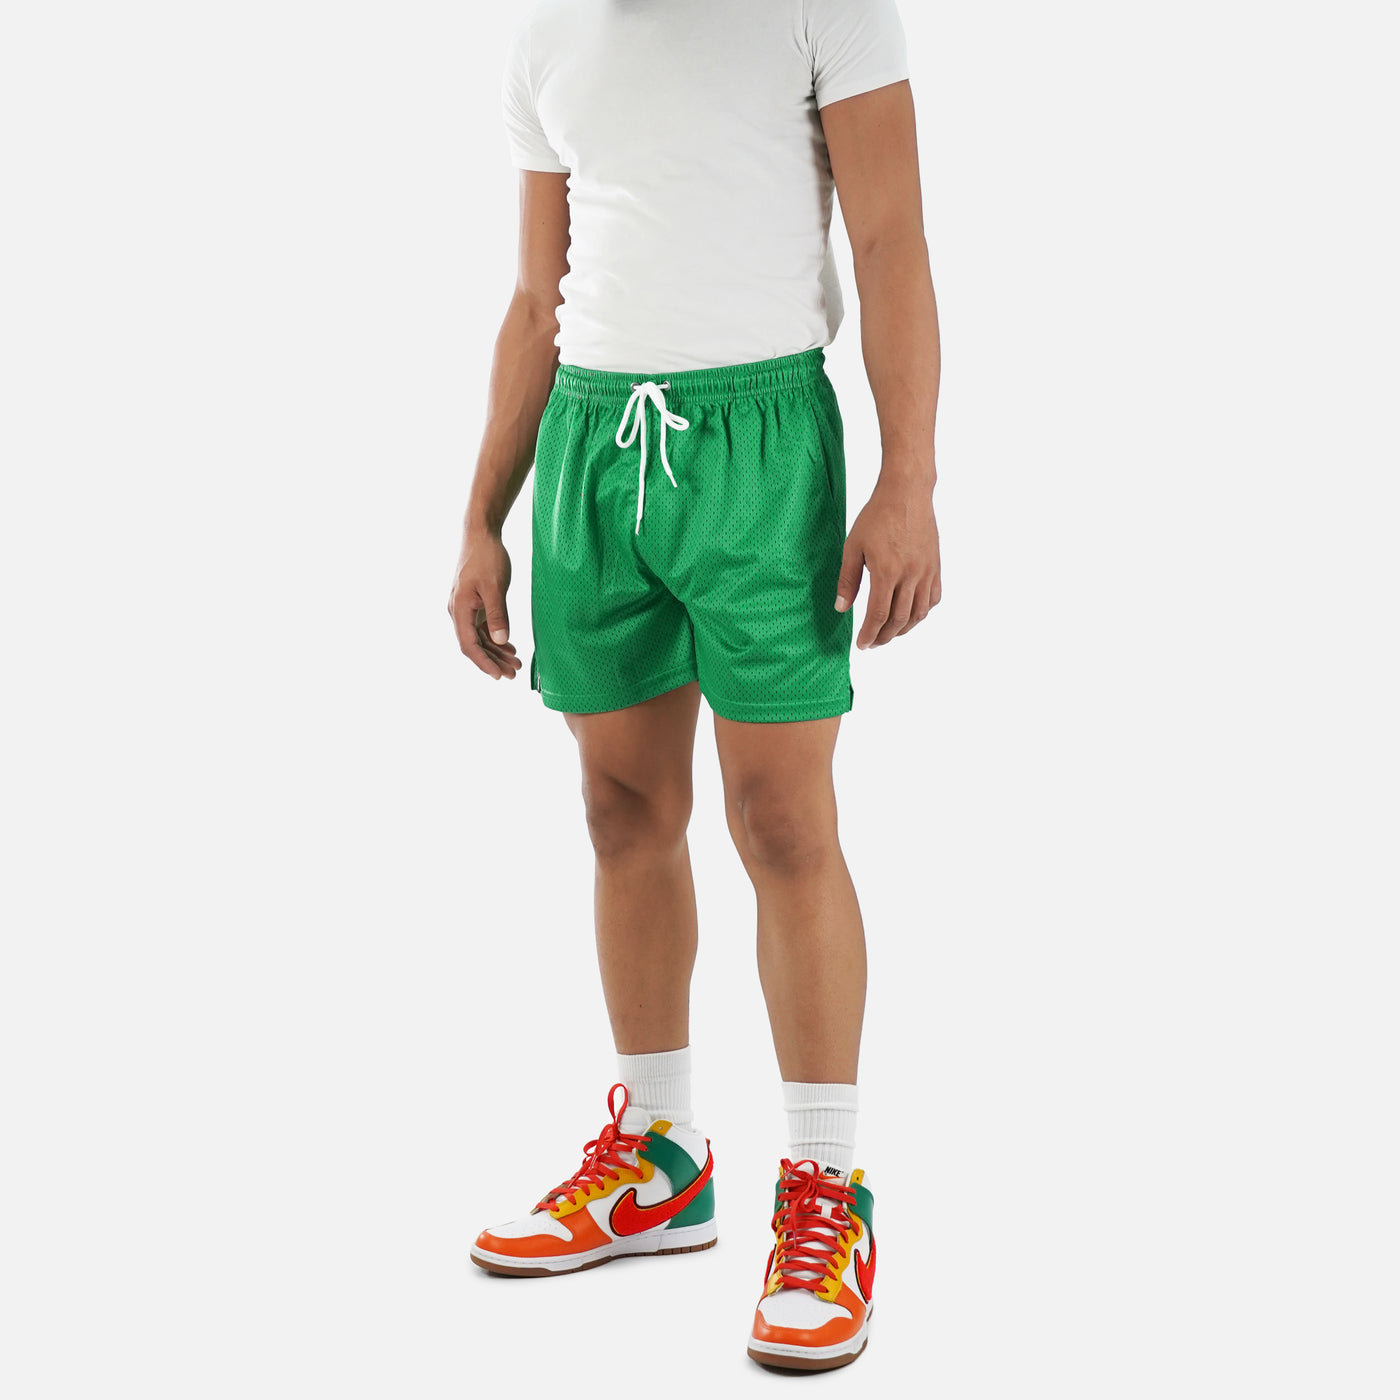 Spring Green Shorts - 7"